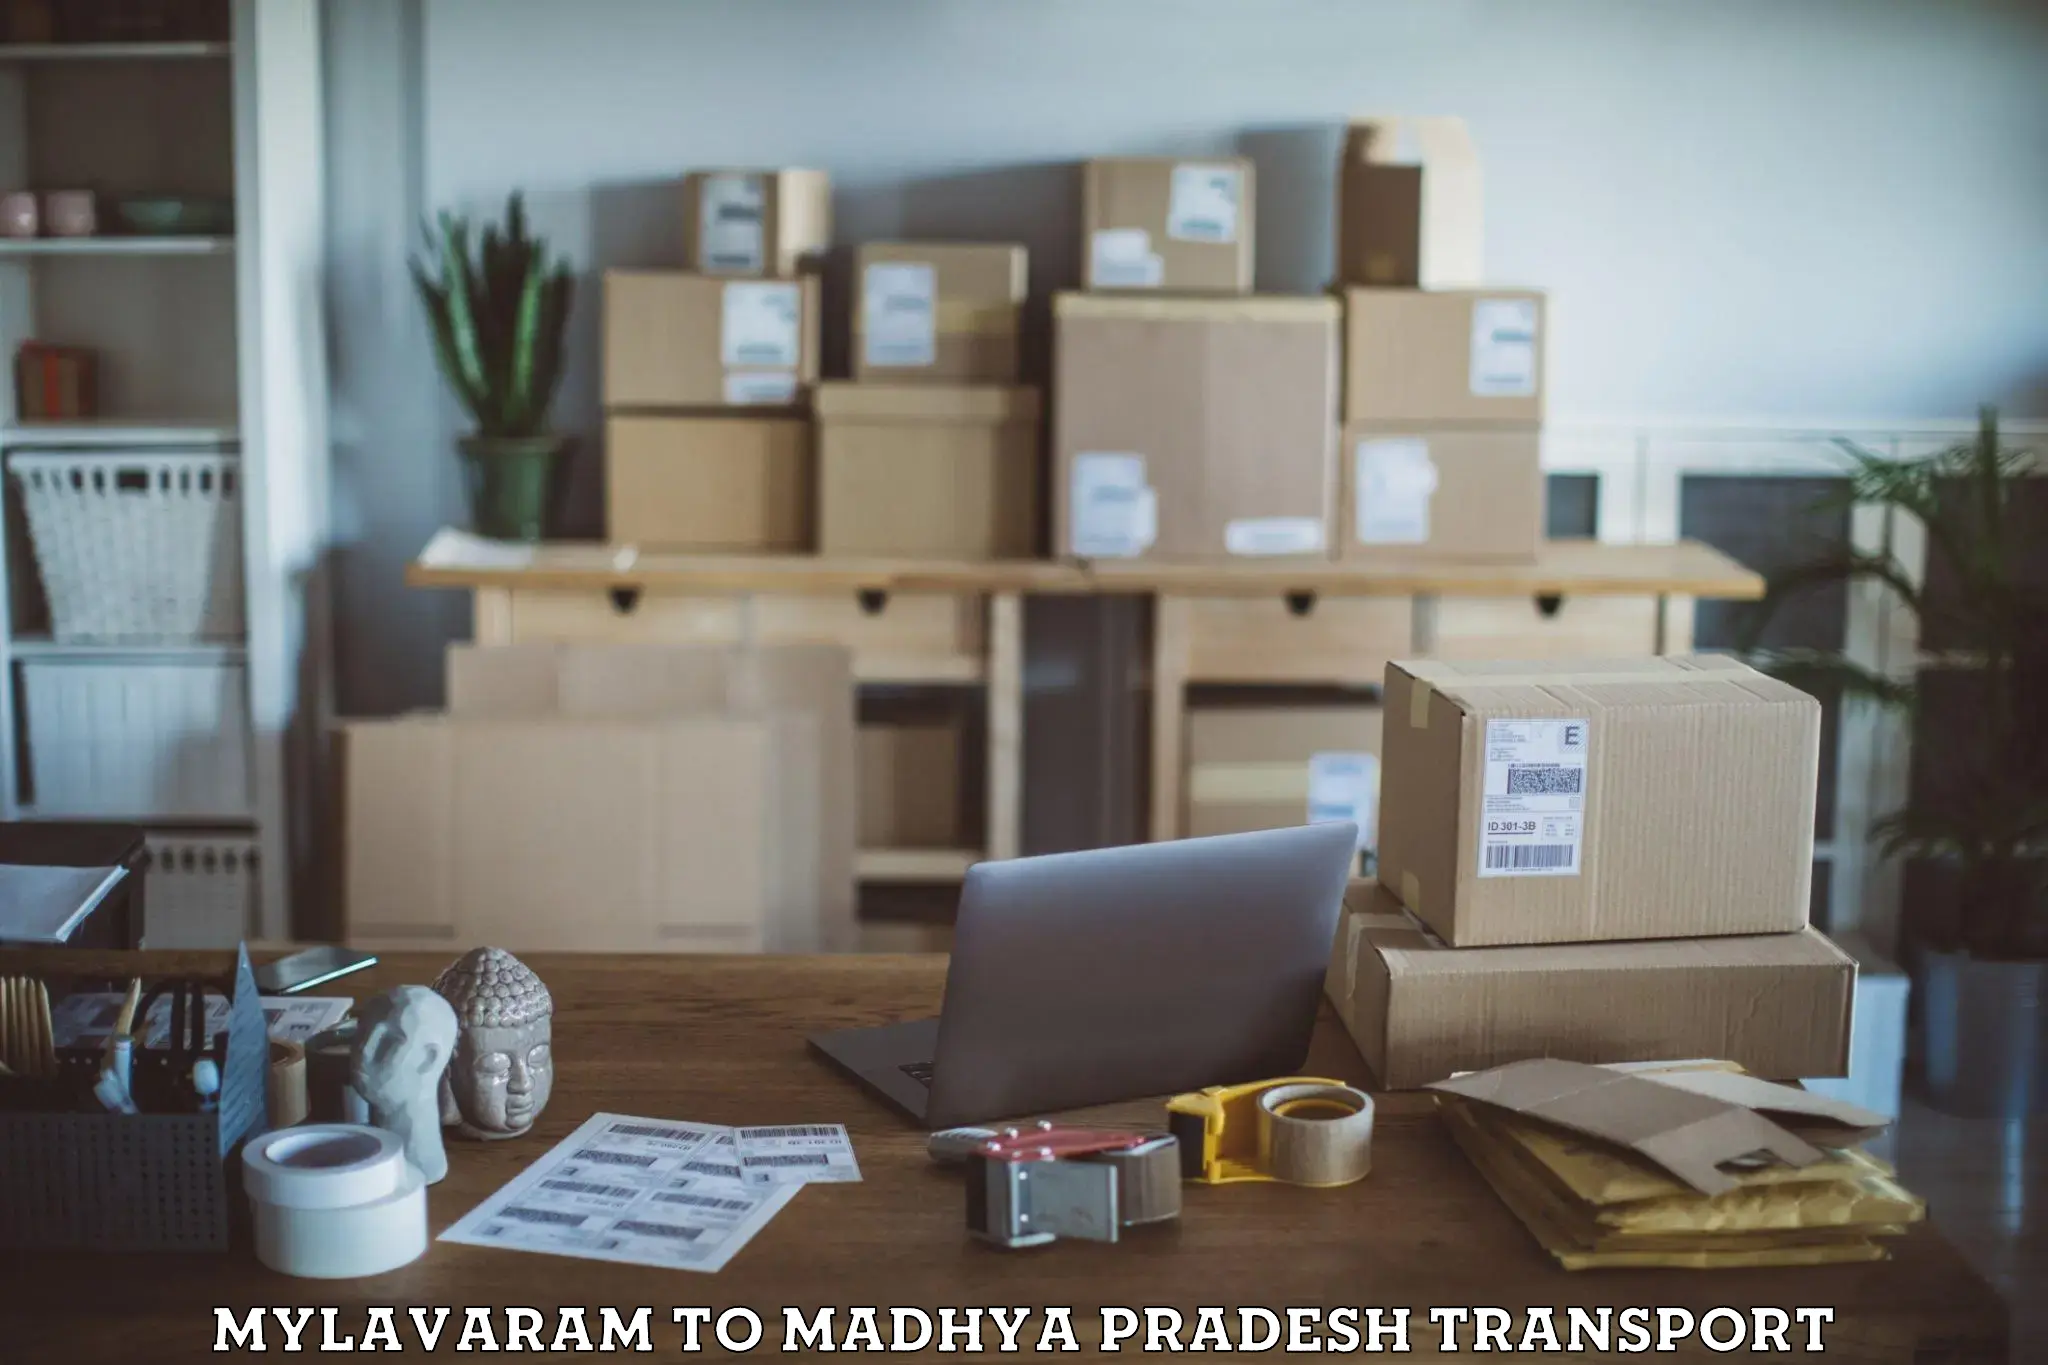 Daily transport service Mylavaram to Madhya Pradesh